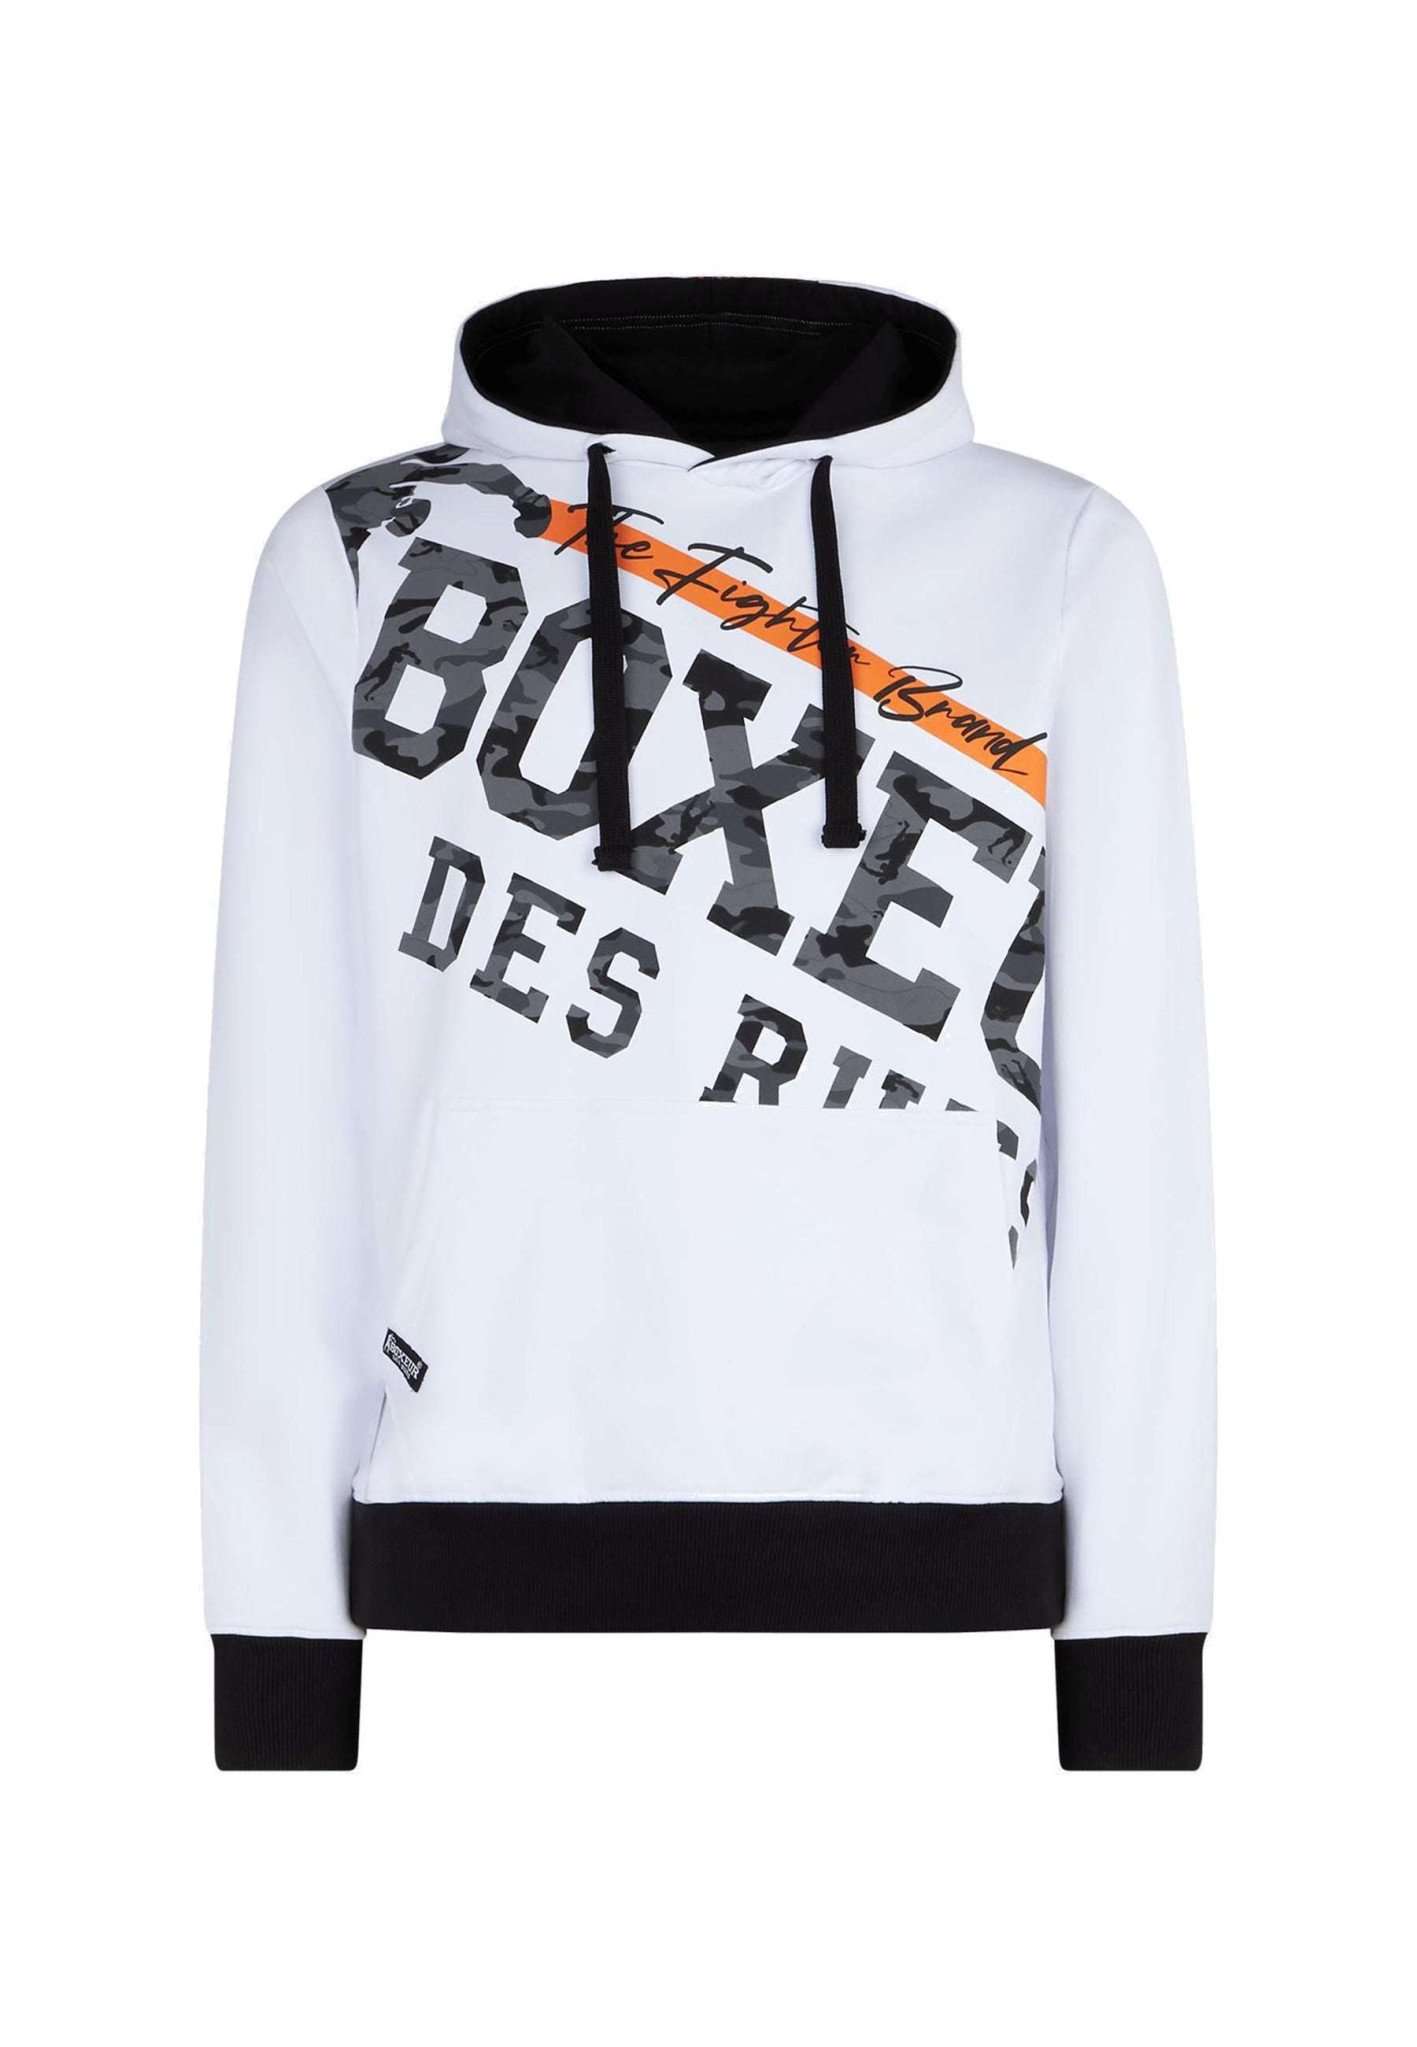 Printed Hoodie Sweatshirt in White Kapuzenpullover Boxeur des Rues   